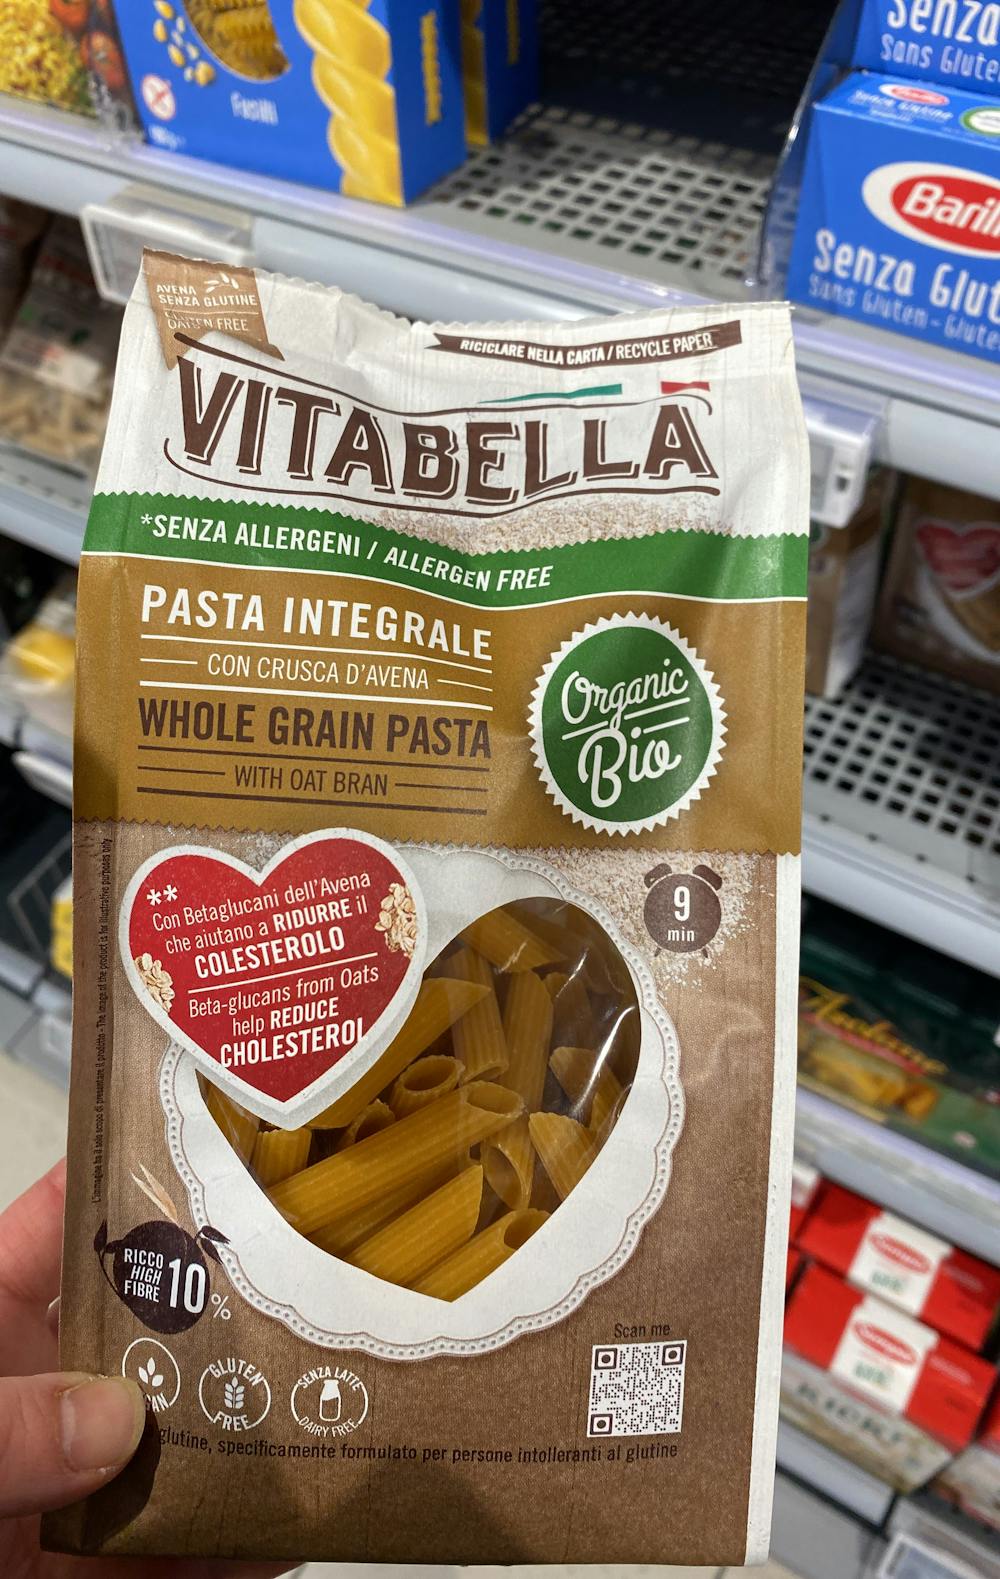 Whole grain pasta , Vitabella